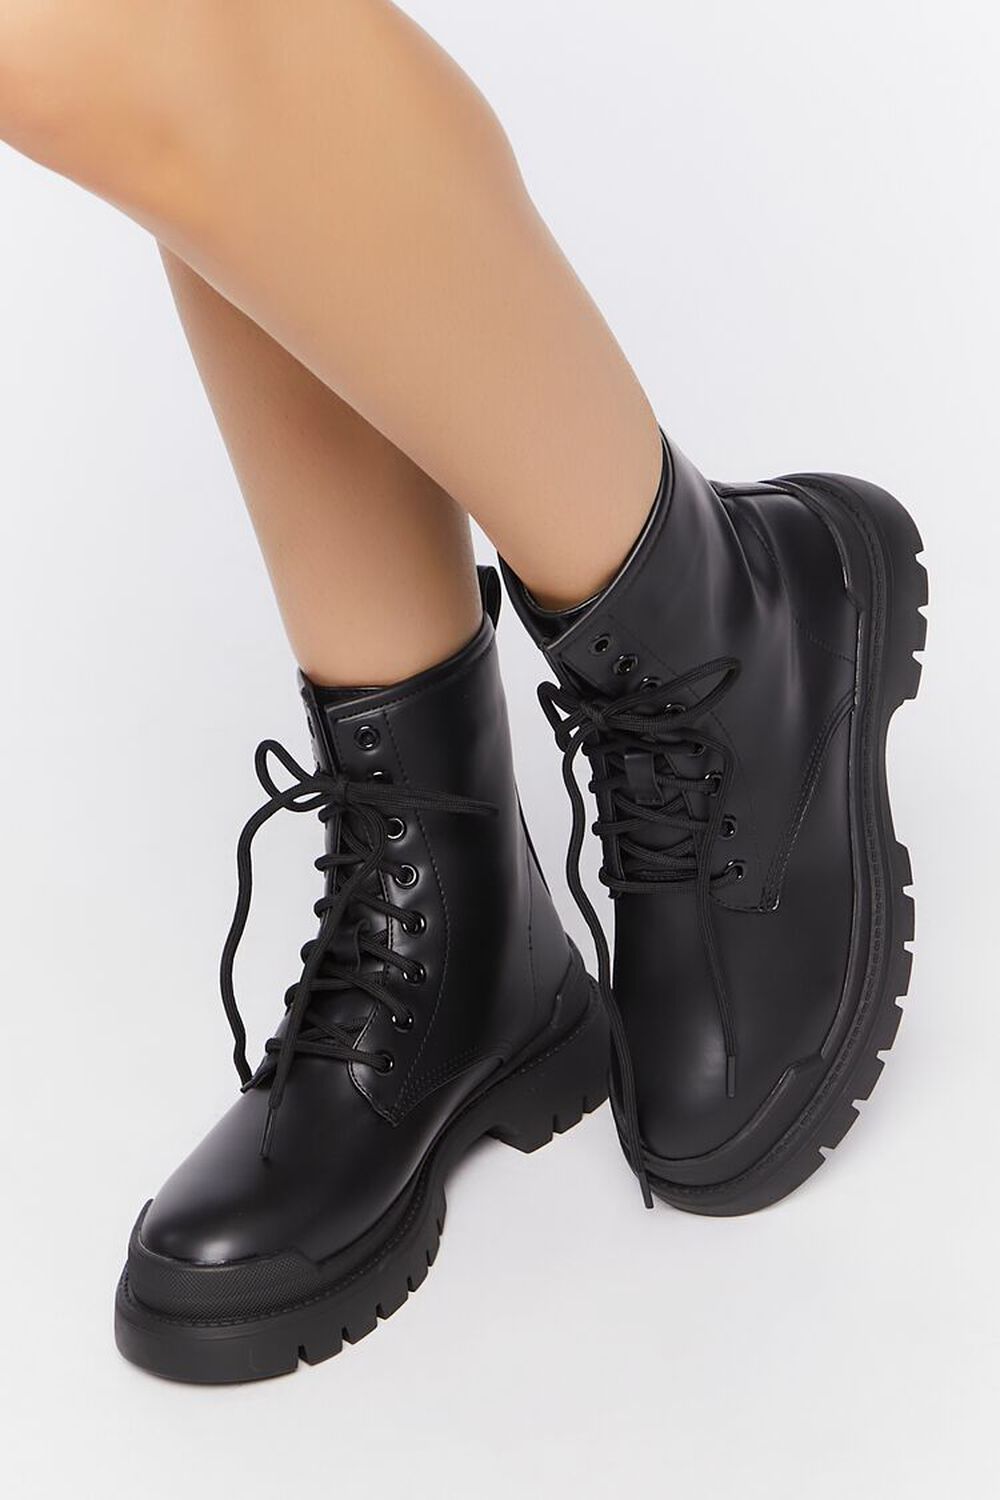 BLACK/BLACK Faux Leather Colorblock Combat Boots, image 1